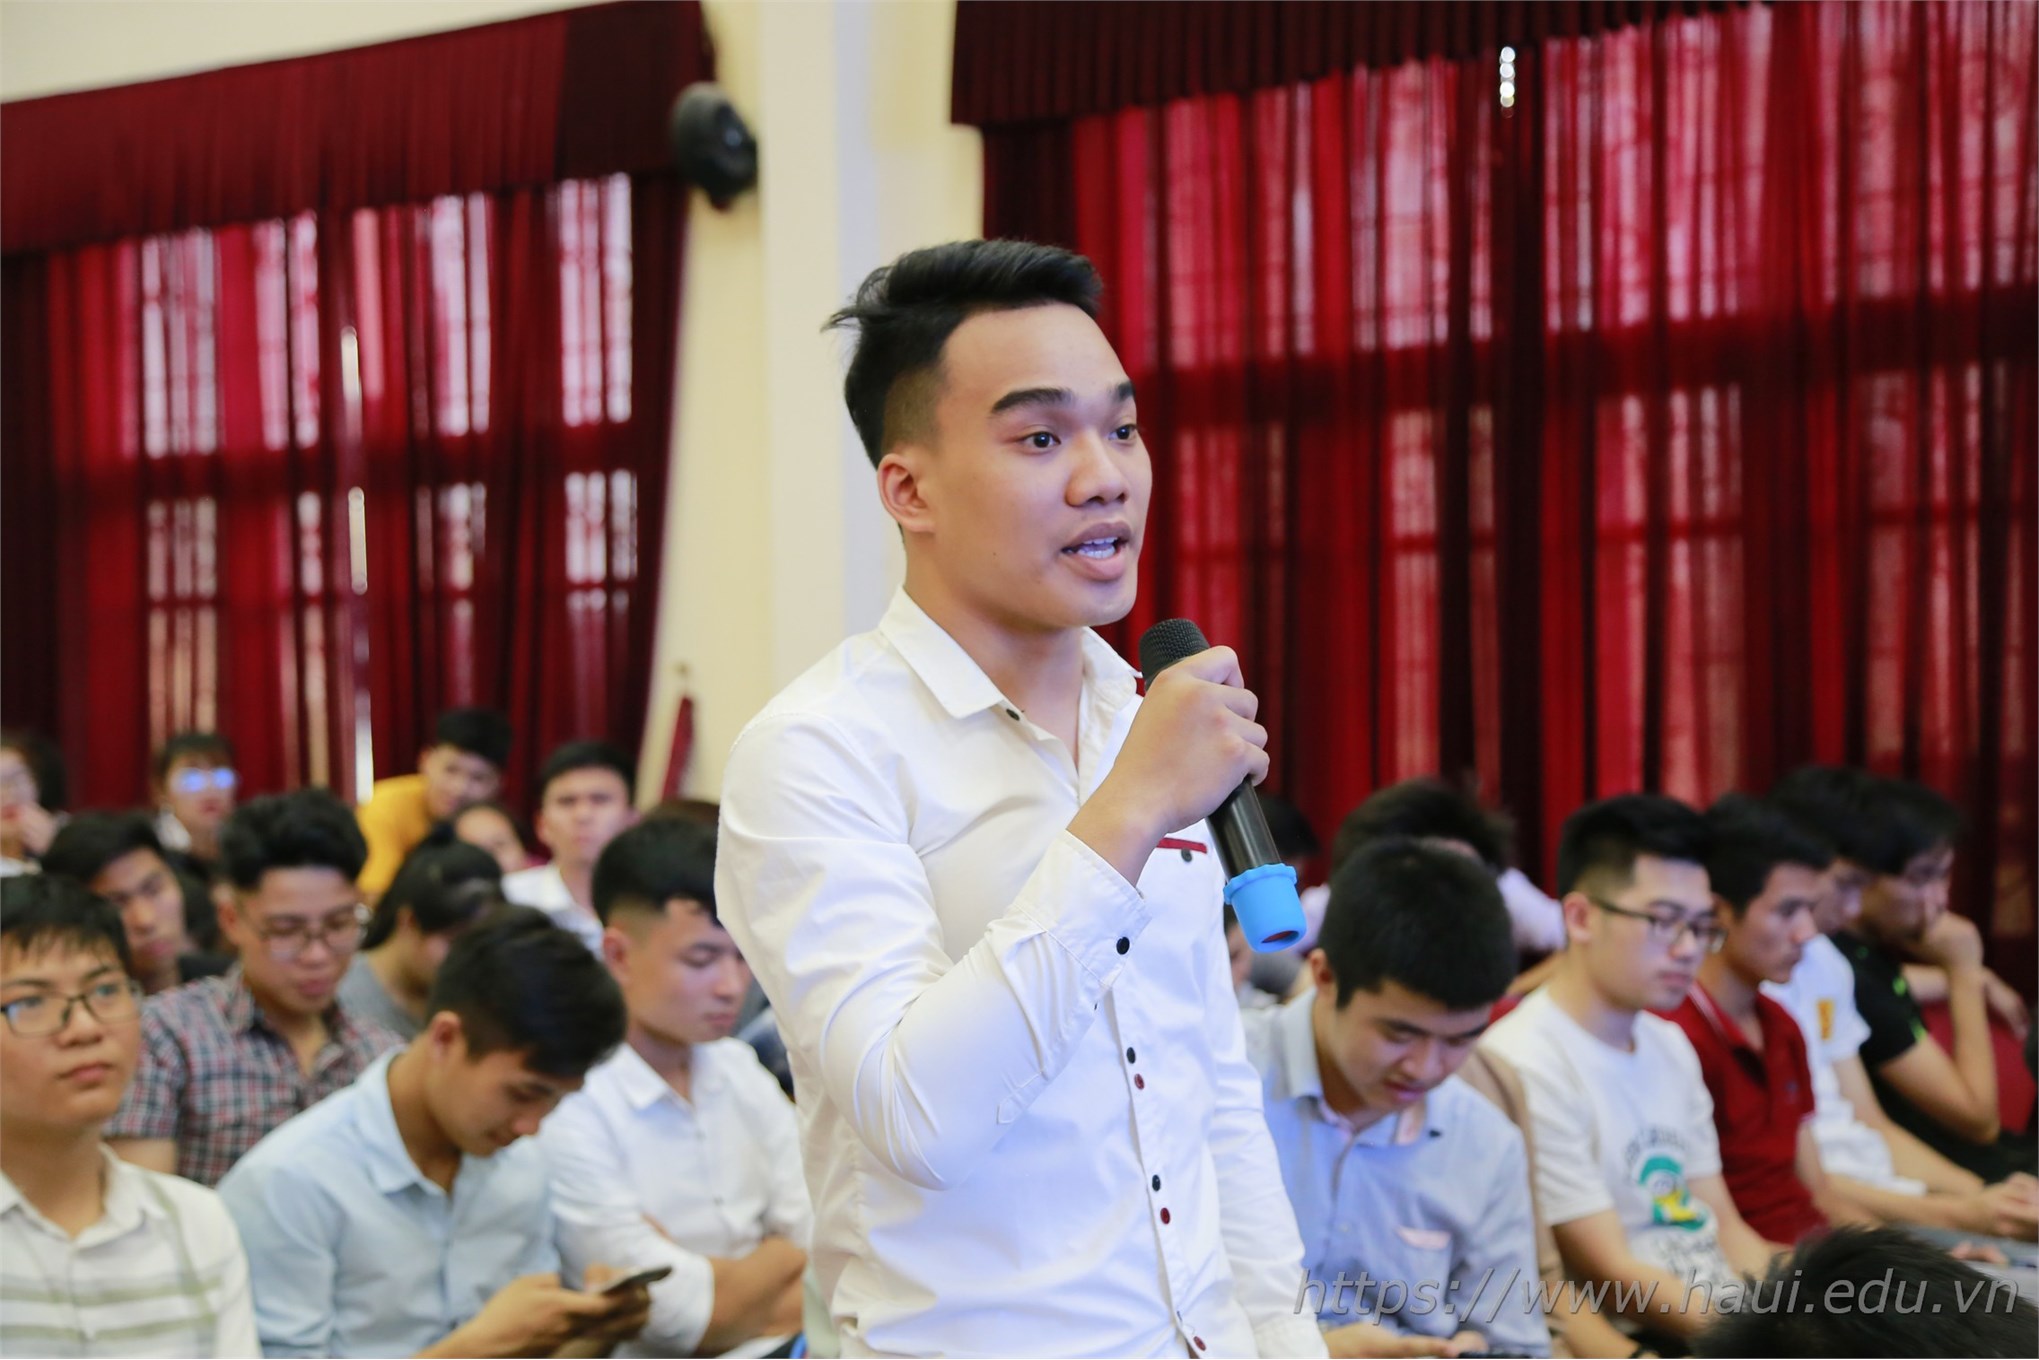 Hội nghị Lớp trưởng, Bí thư Chi đoàn các lớp tại Hà Nội năm học 2018 - 2019